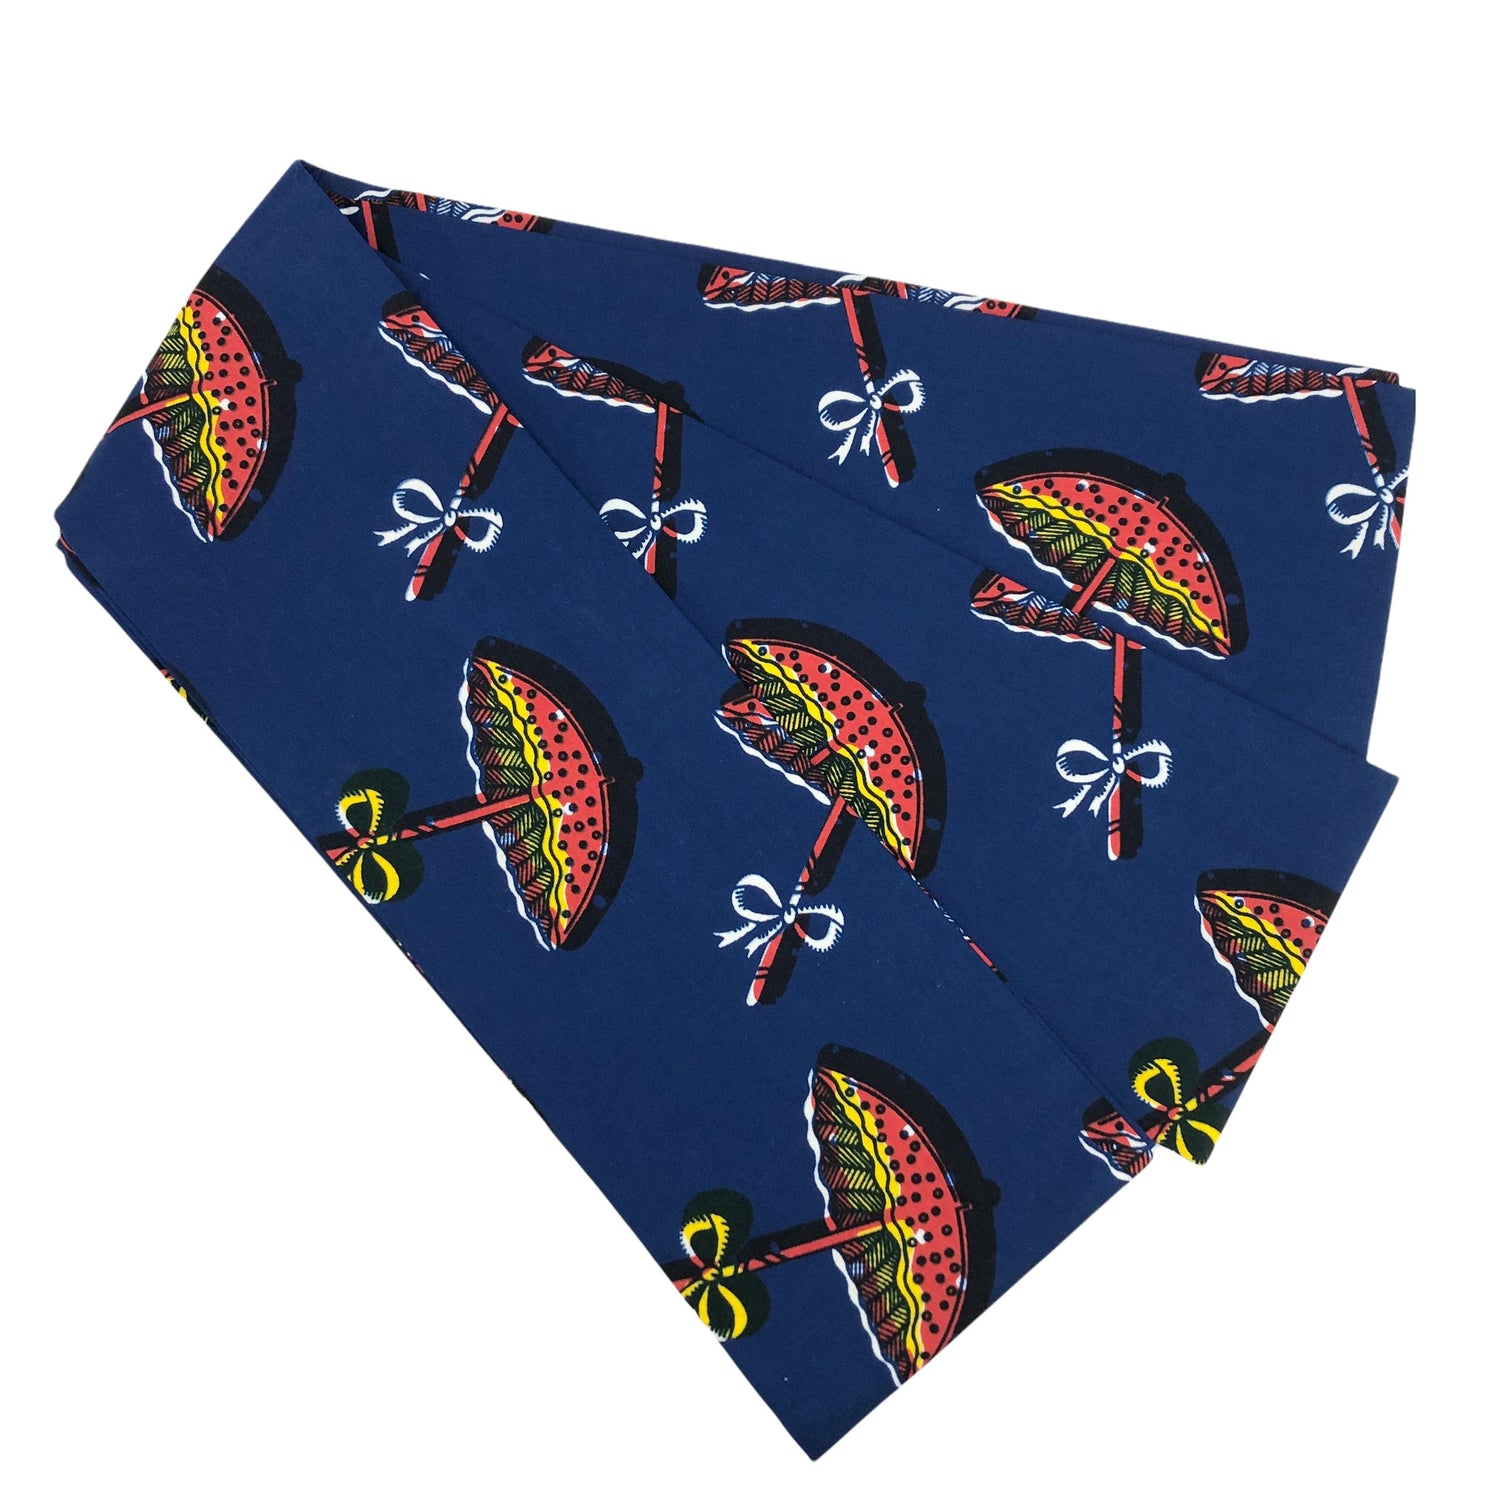 saasaawa 半巾帯『リボンの傘』 帯 saasaawa 